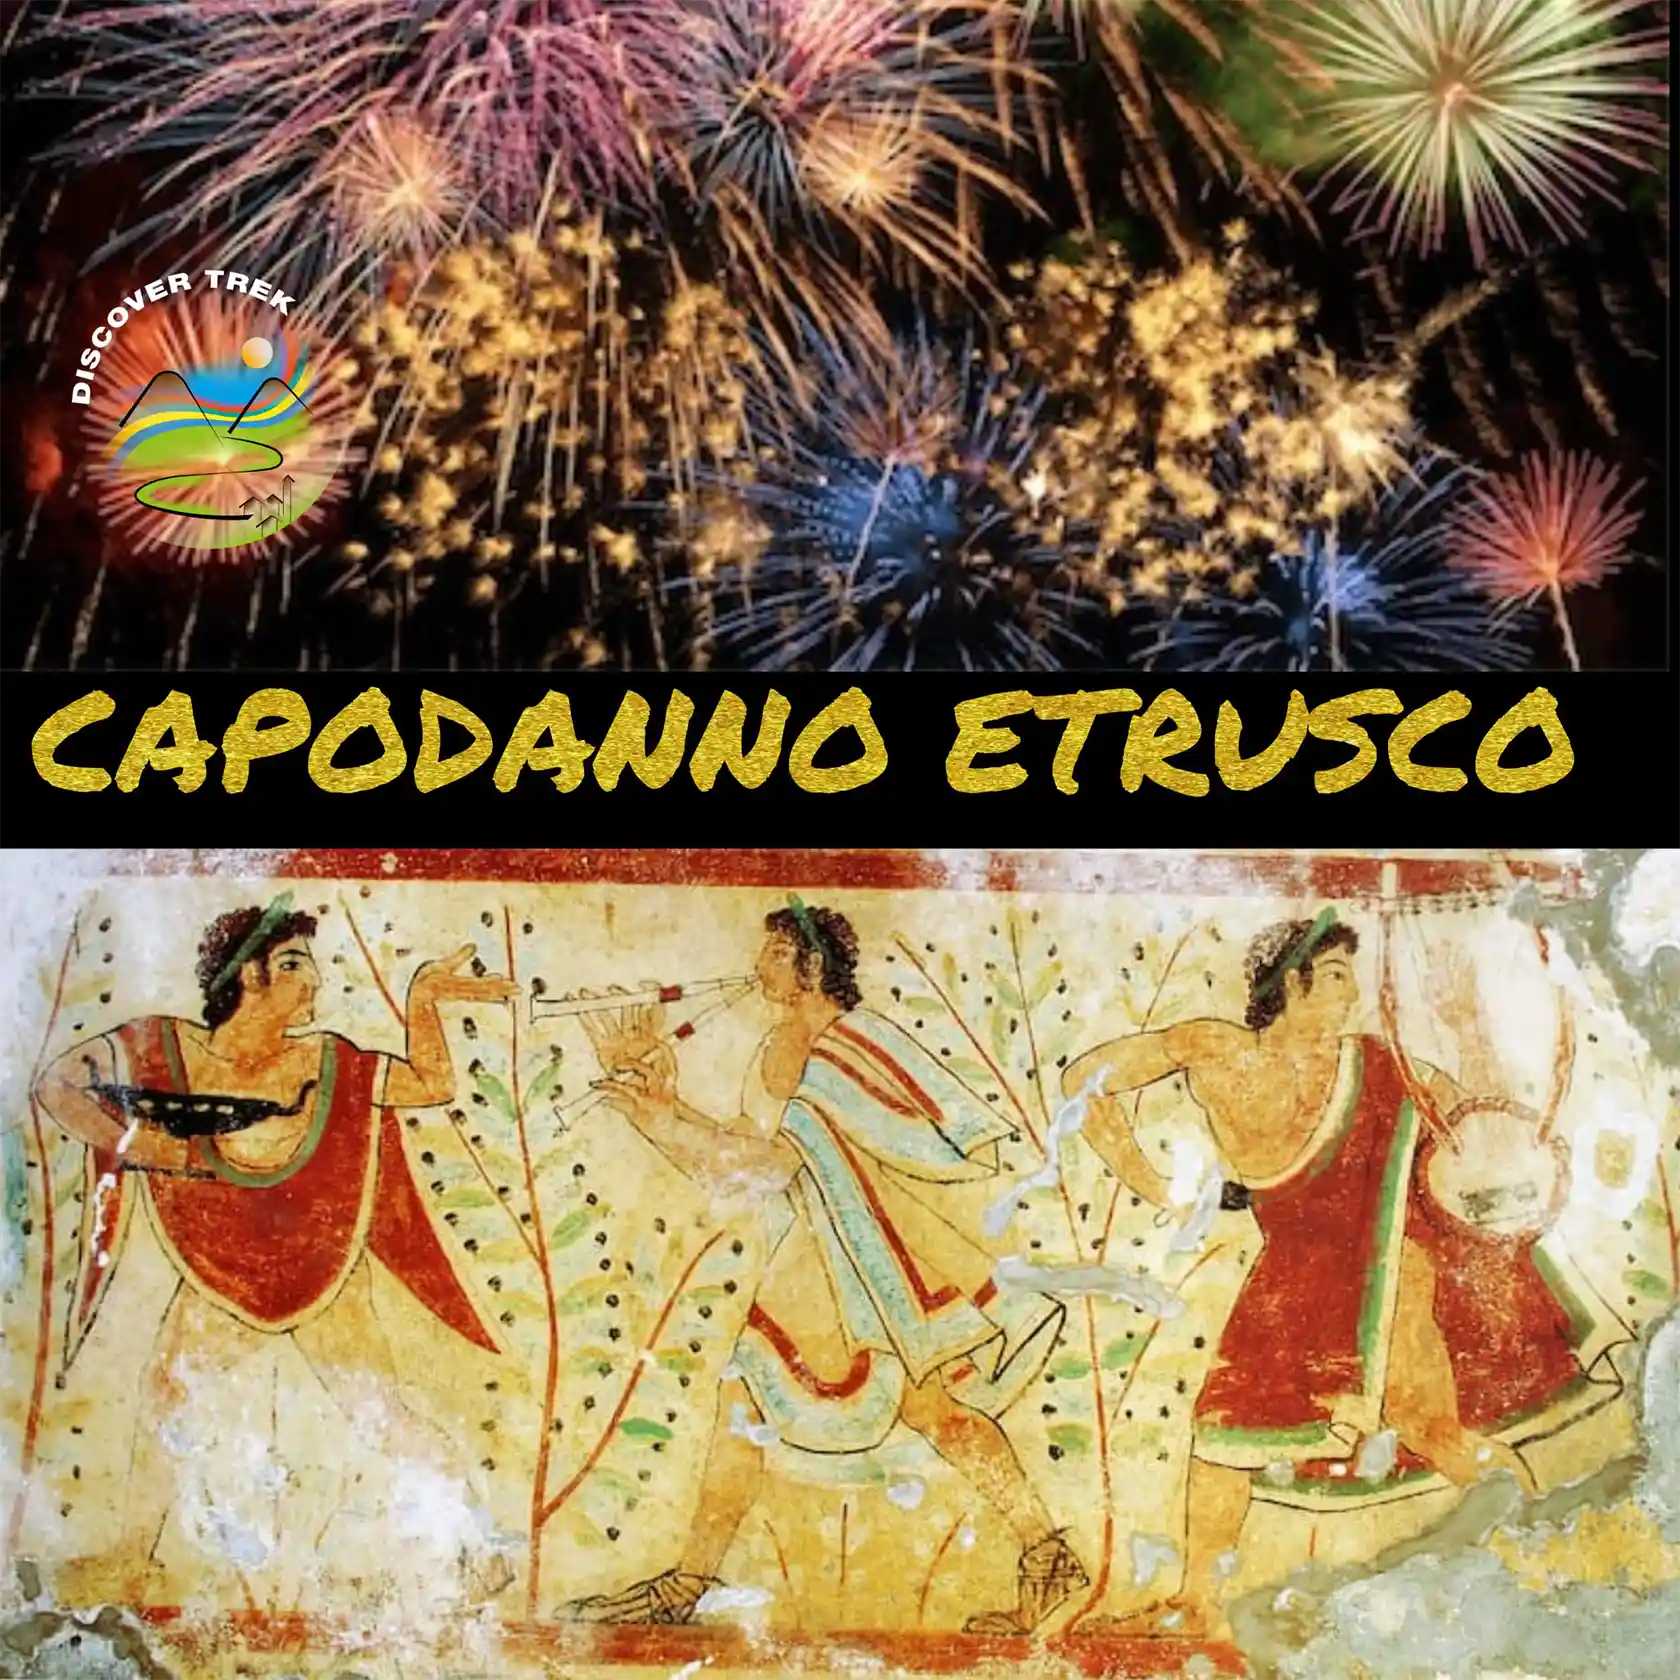 Capodanno Etrusco a Tarquinia, raffigurante figure allegoriche dell'antichità